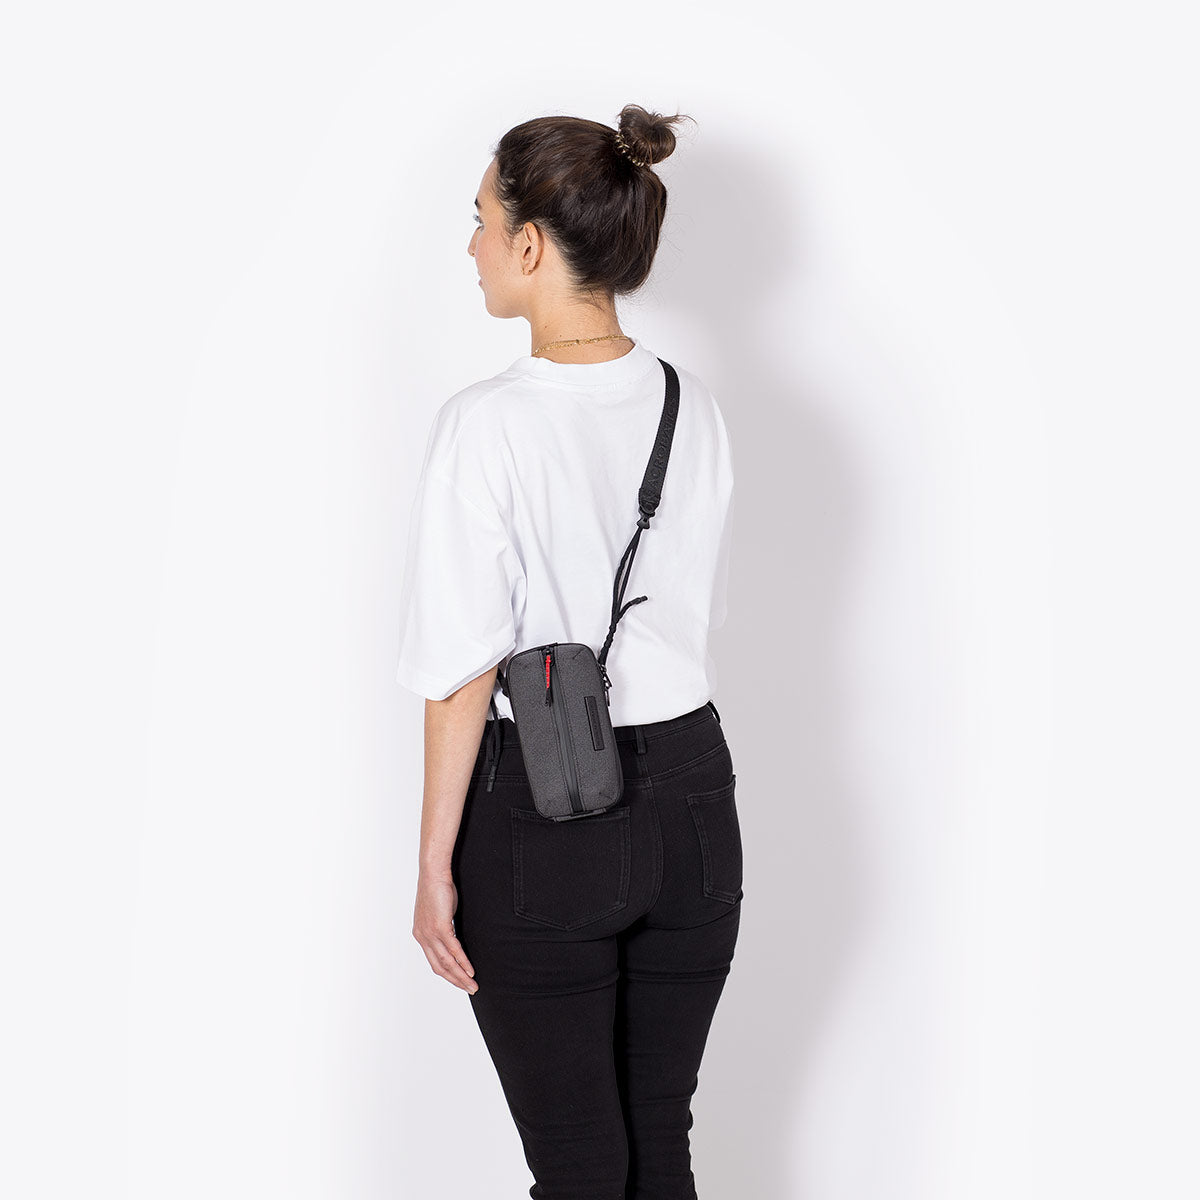 Photo backpack MATEO black | Online Shop Gonser - Sicher & Günstig einkaufen